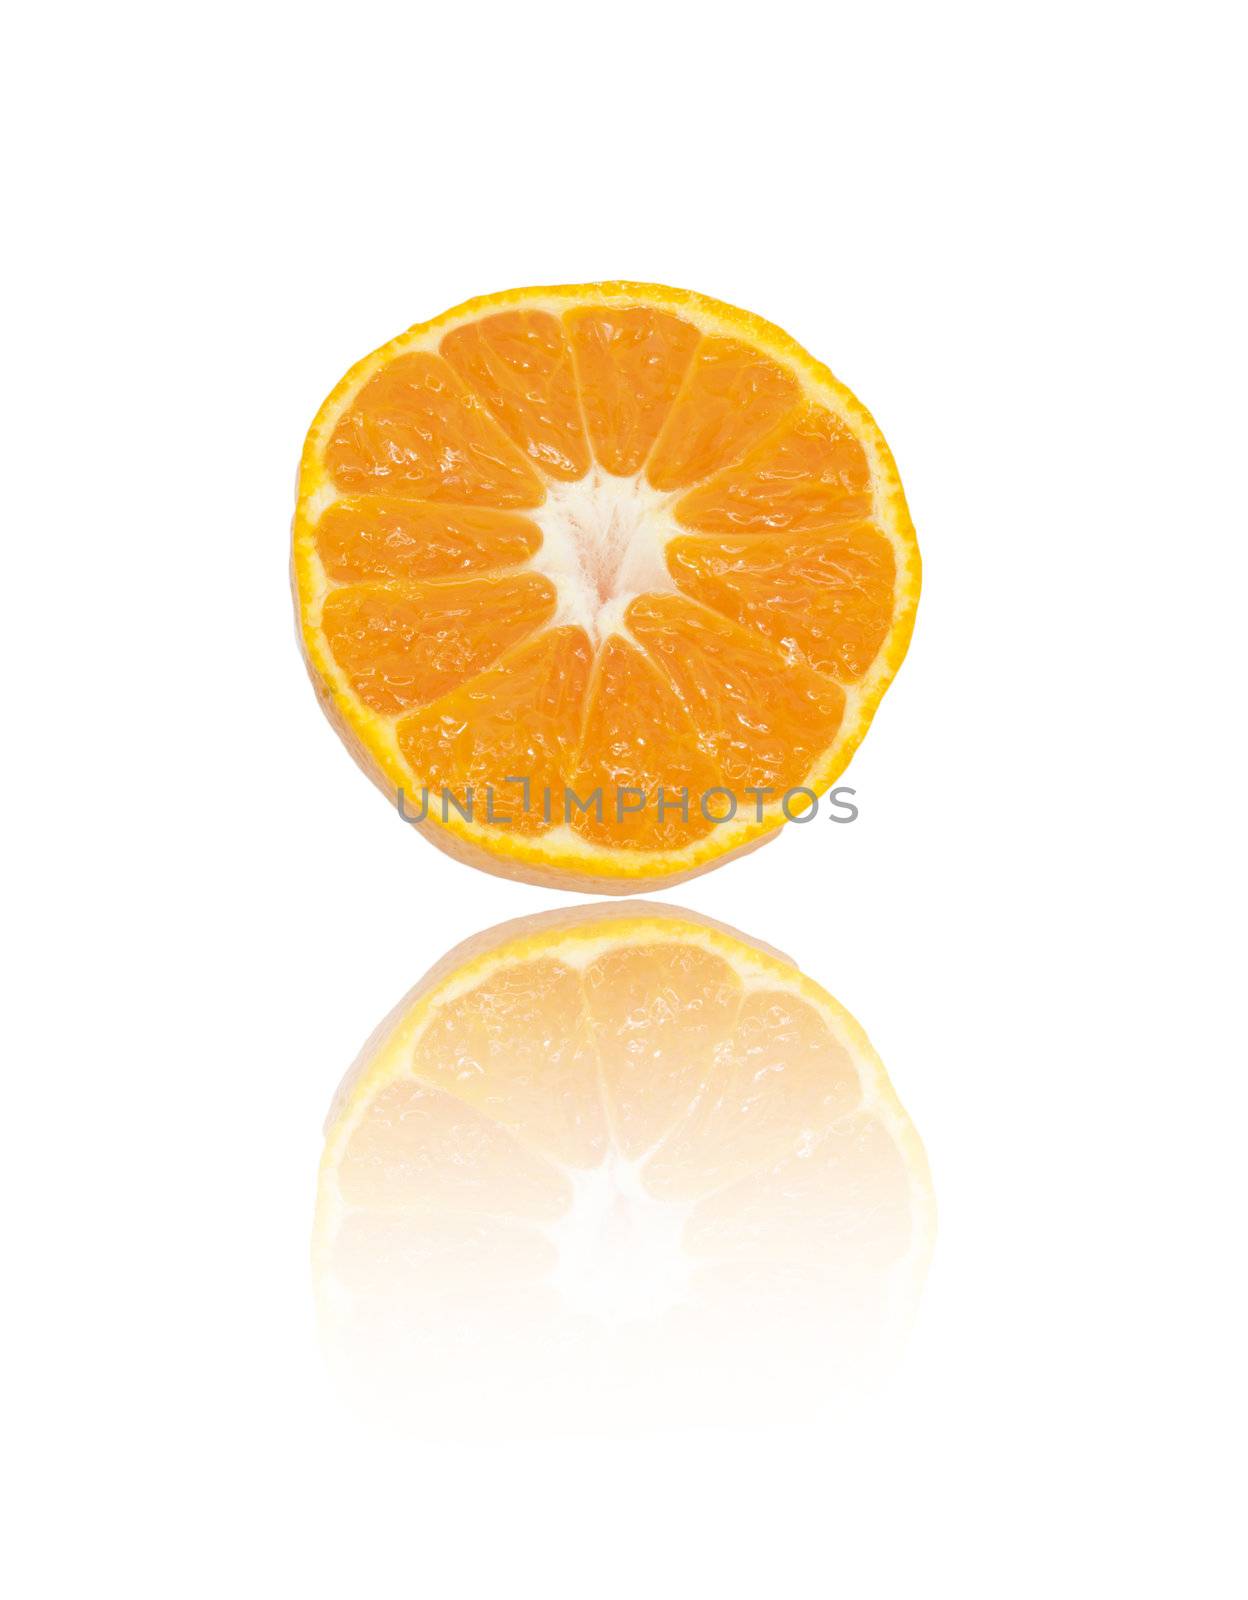 Juicy tangerine, mandarin, orange on white background, closeup,  by schankz